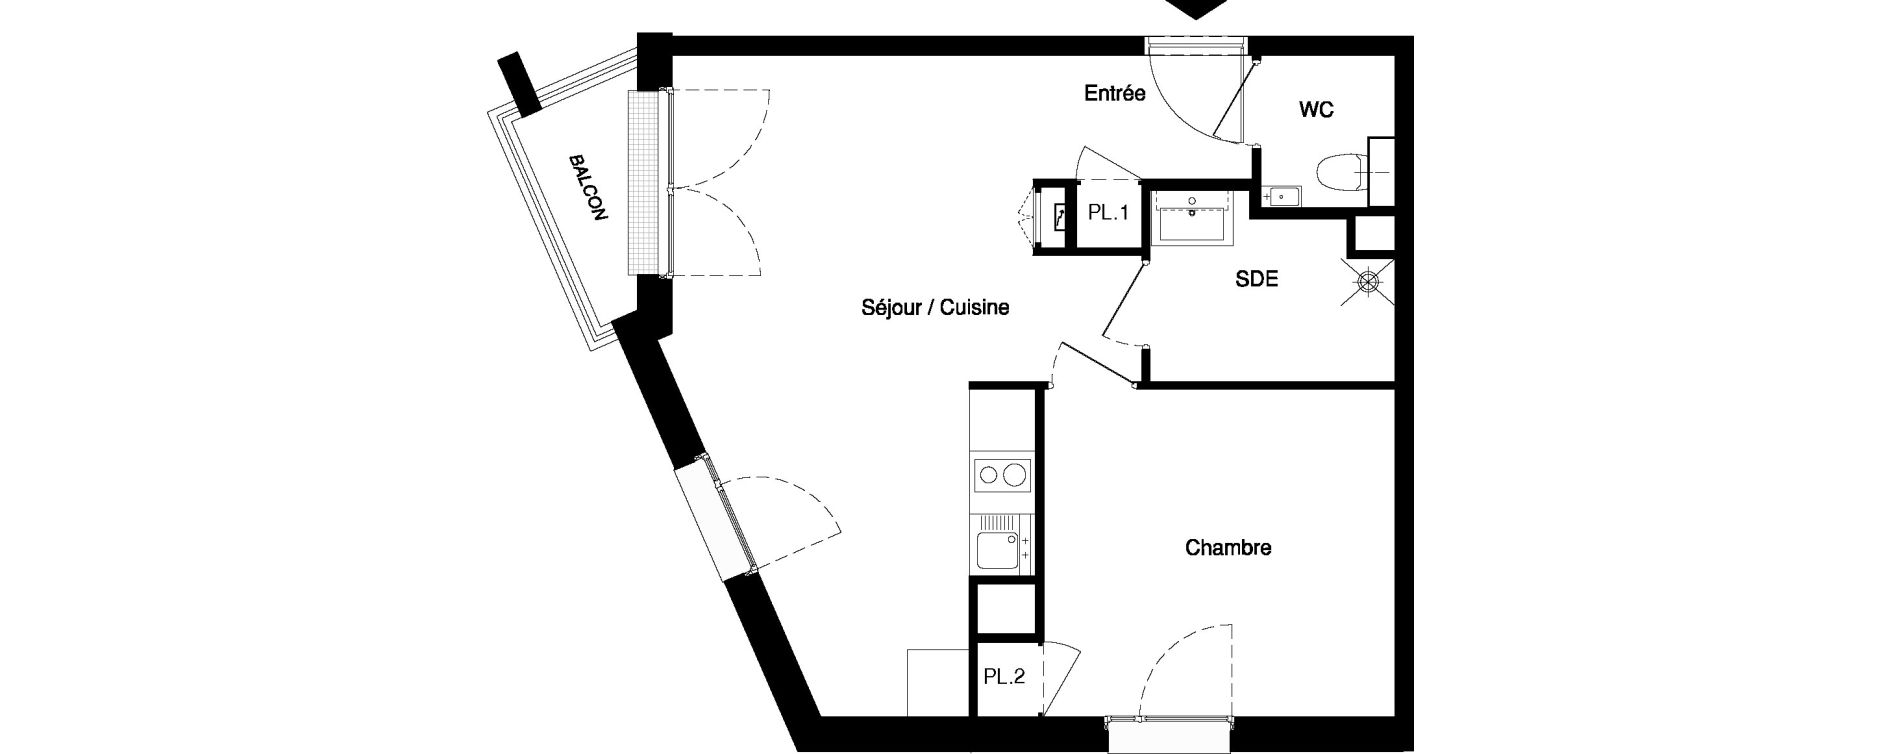 Appartement T2 meublé de 41,17 m2 à Nancy Rives de meurthe